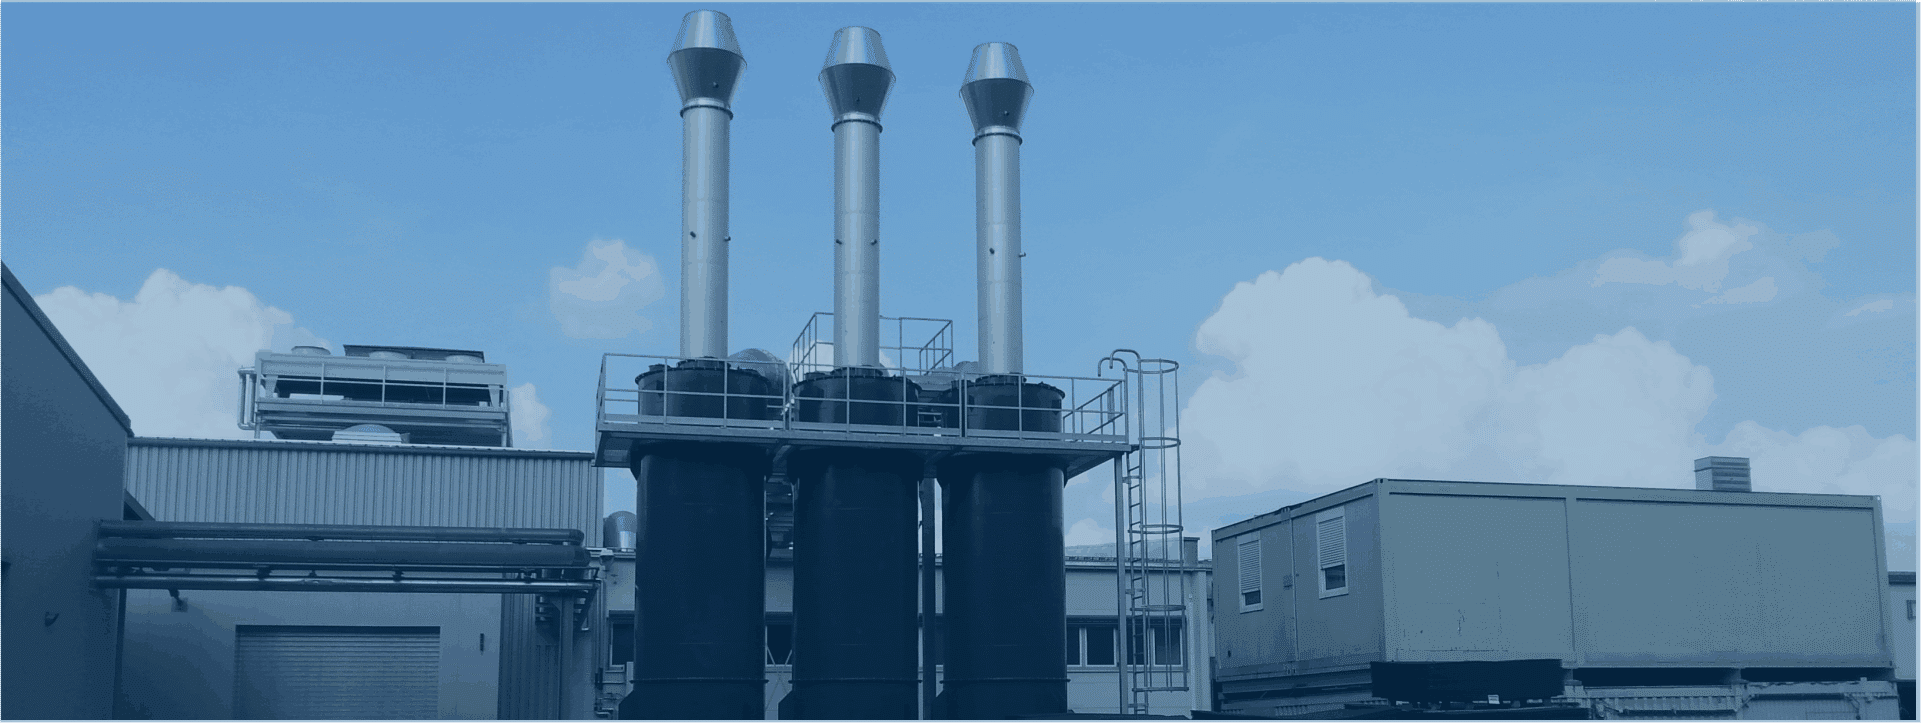 Das Gummiwerk Kraiburg installiert ein KMA Hybridfiltersystem bestehend aus Elektrofilter, Wärmetauscher und Feinkohlefilter.